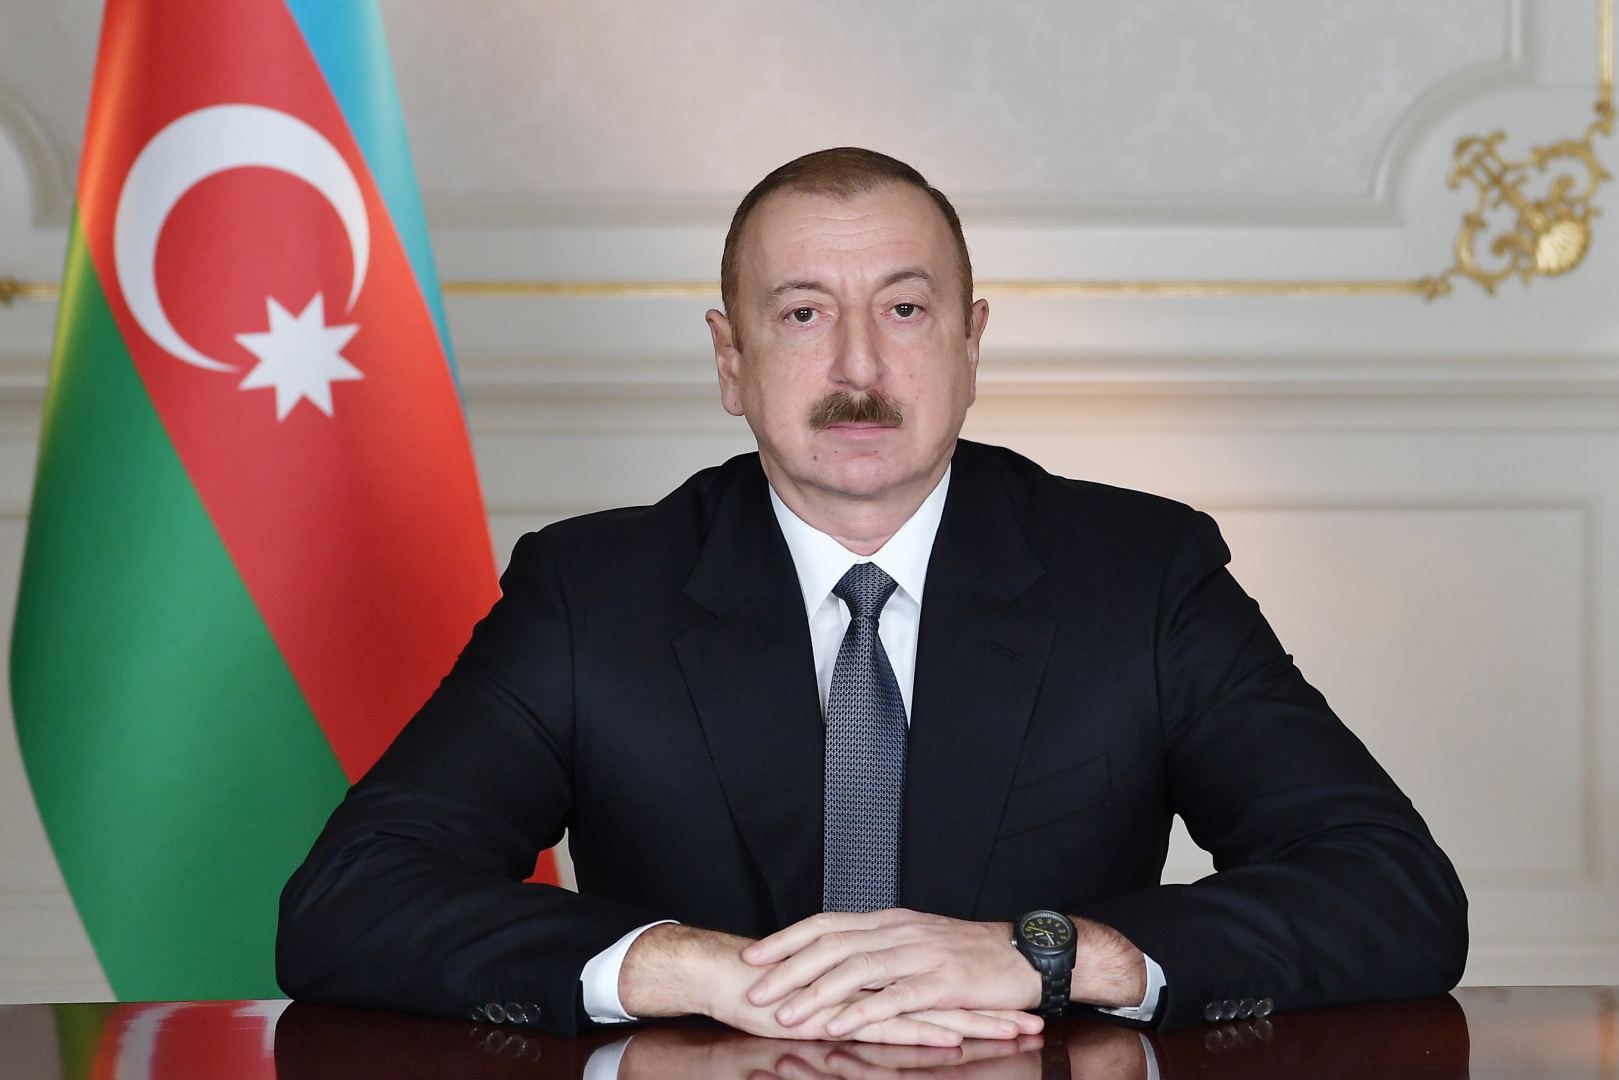 Утверждено приложение к Соглашению об экономическом и техническом сотрудничестве между правительствами Азербайджана и Сербии